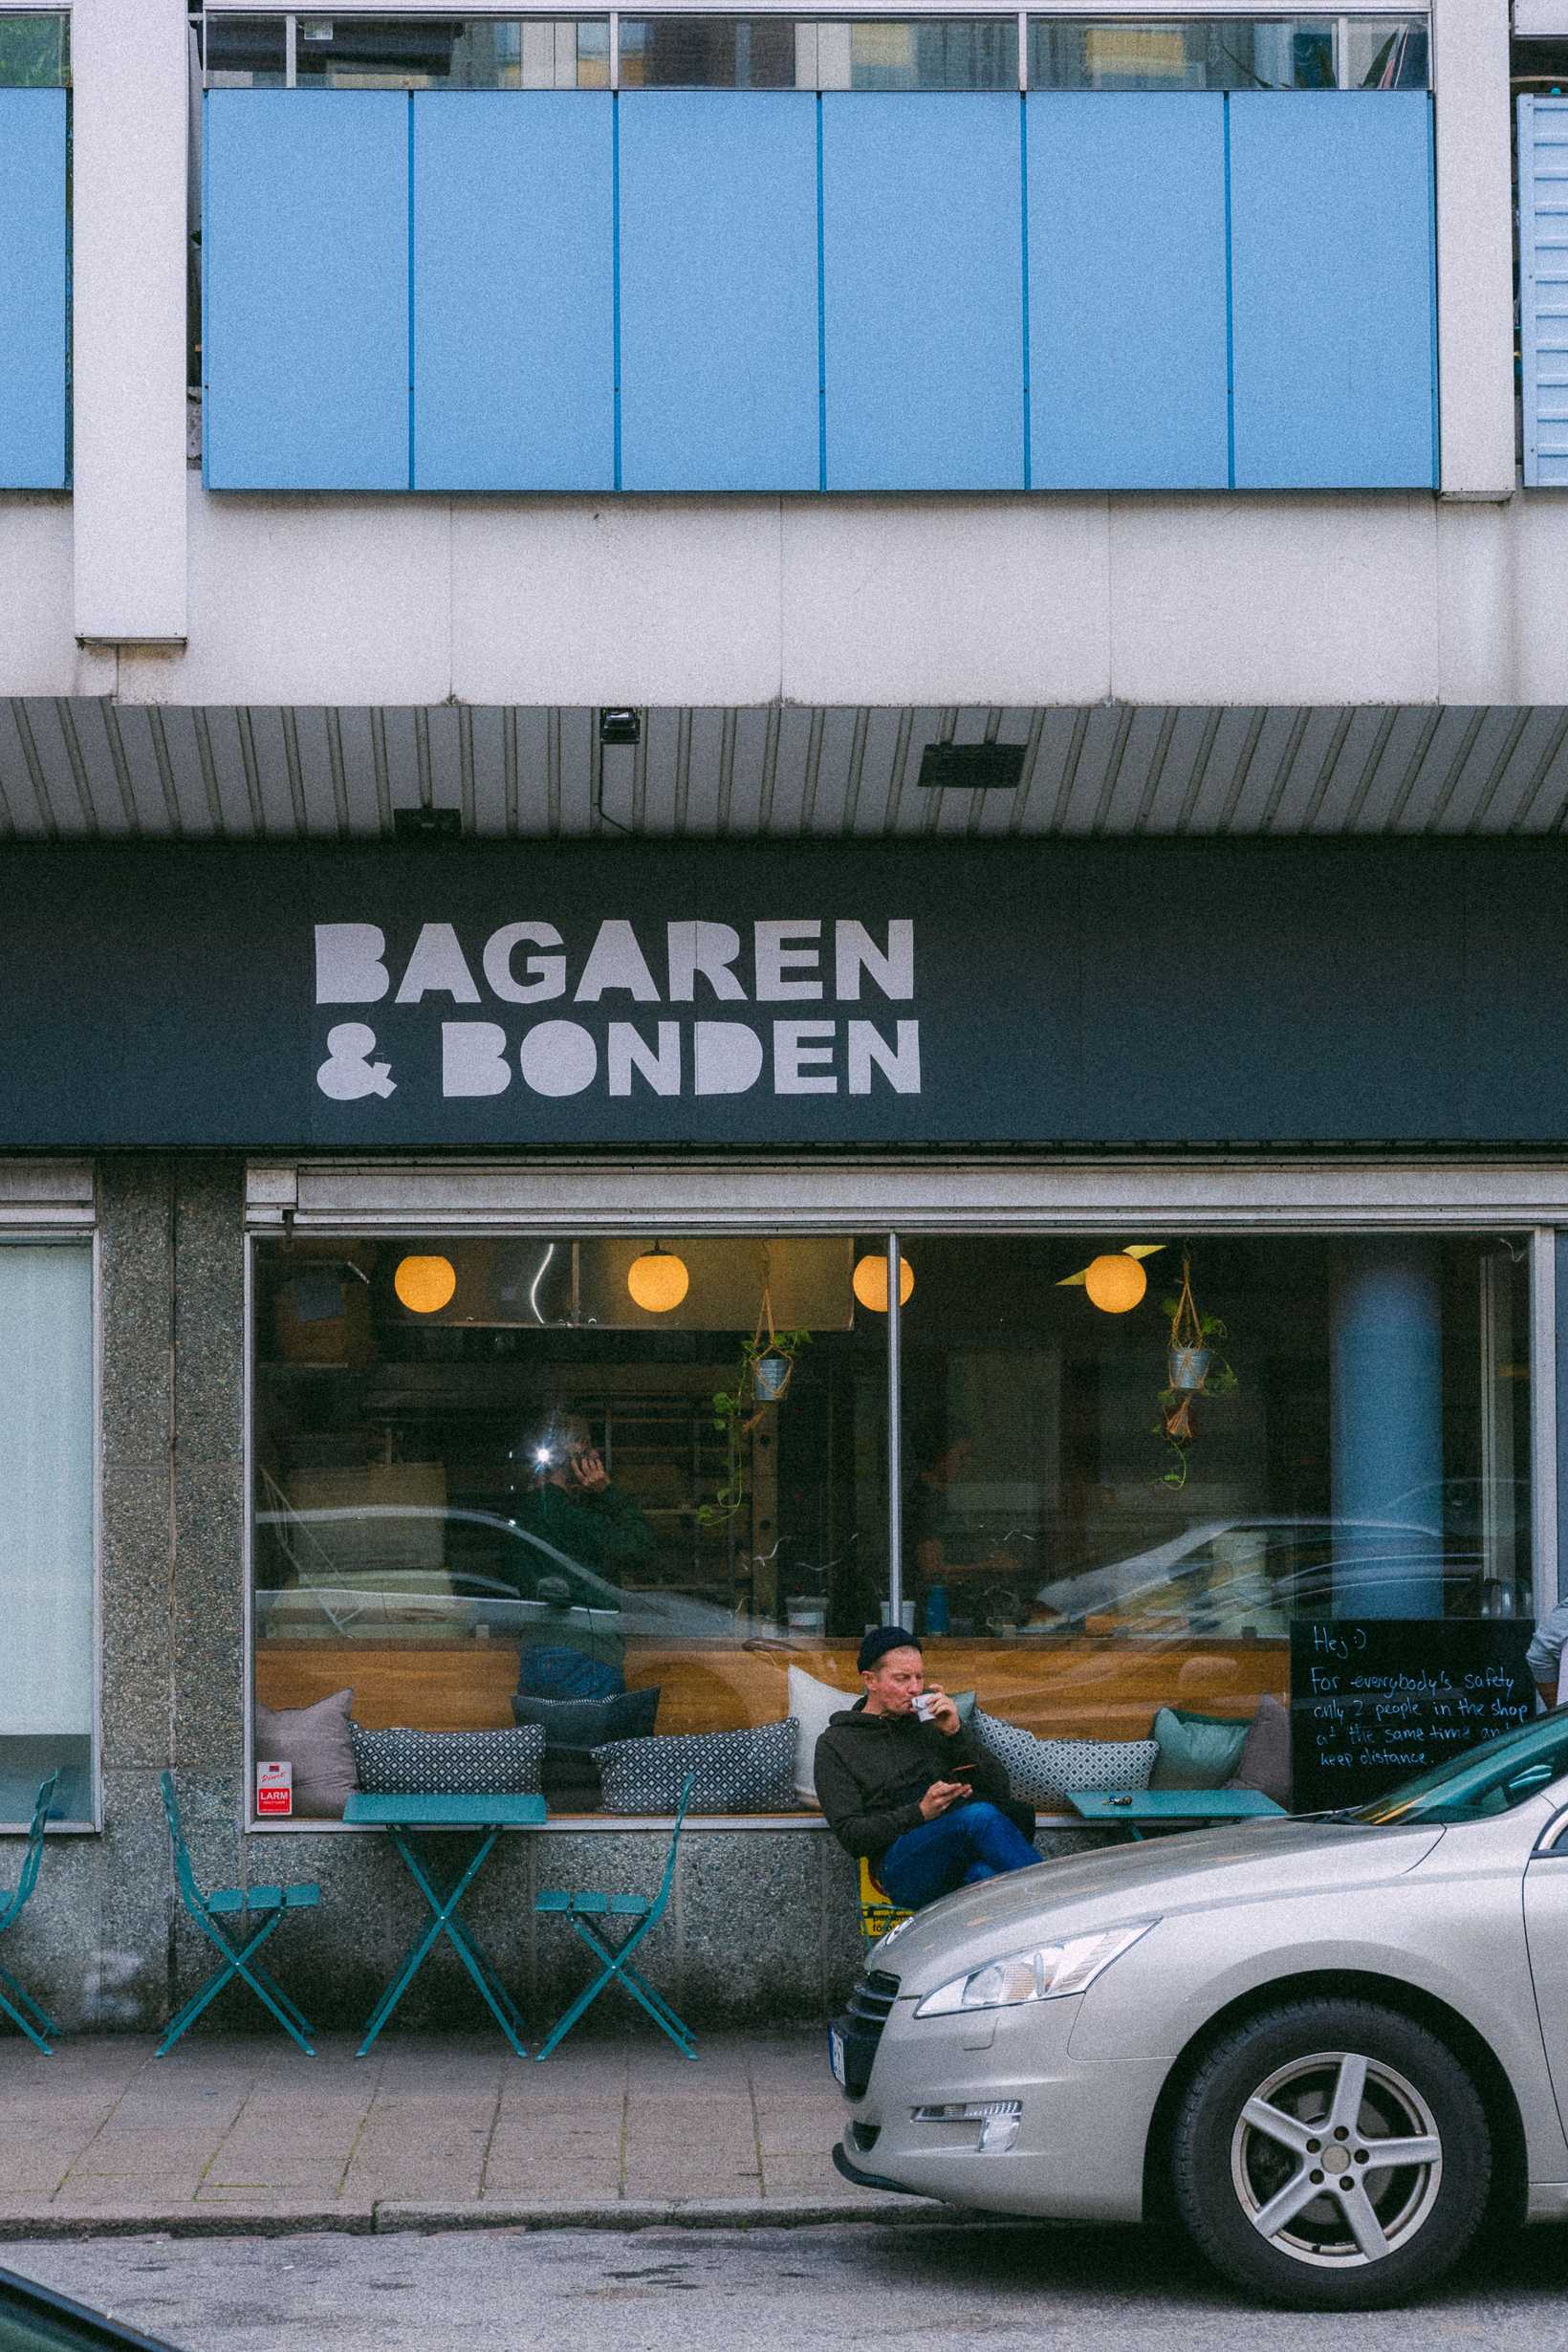 Bagaren och Bonden, Hermansgatan 3, 212 11 Malmö. Fotograf: Joel Hervall